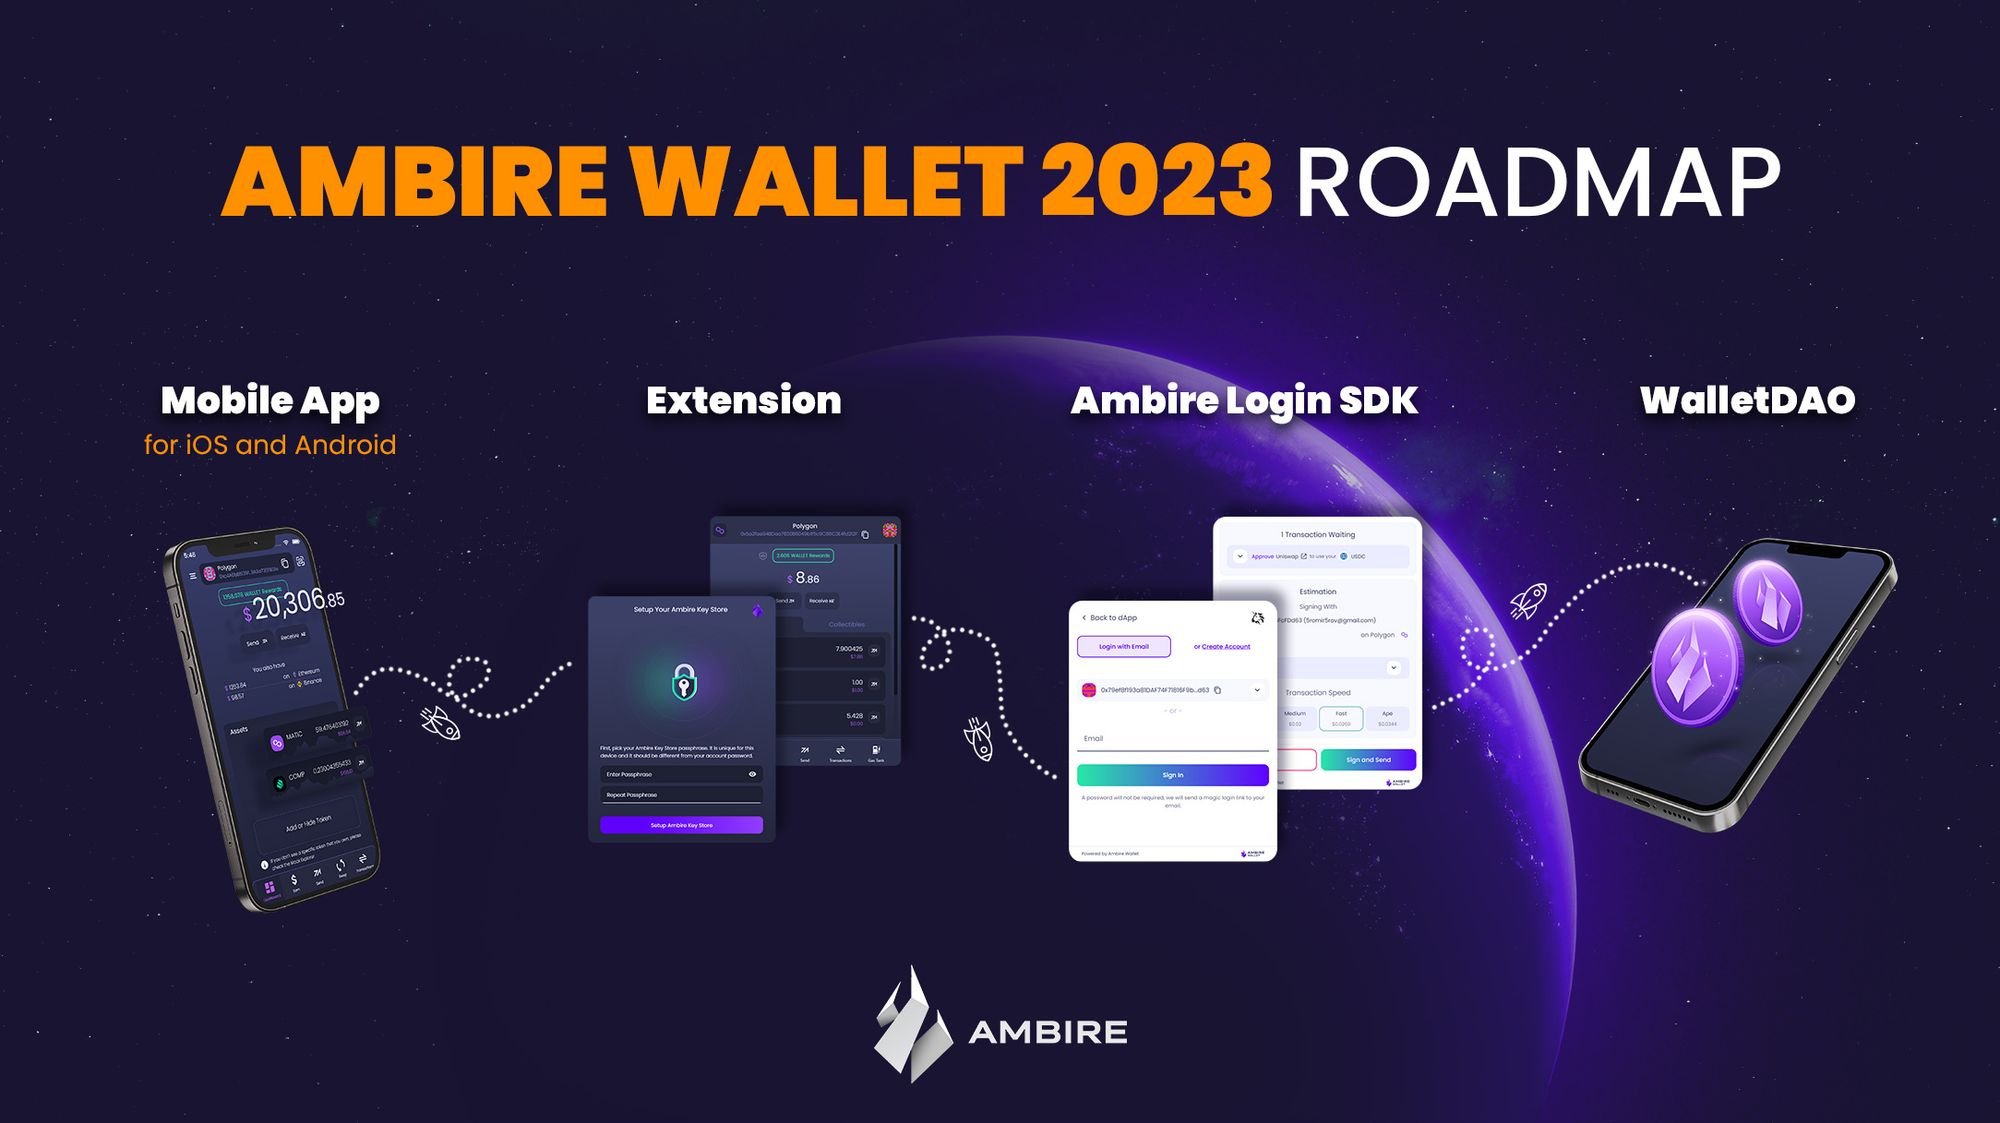 Ambire Wallet 2023 roadmap